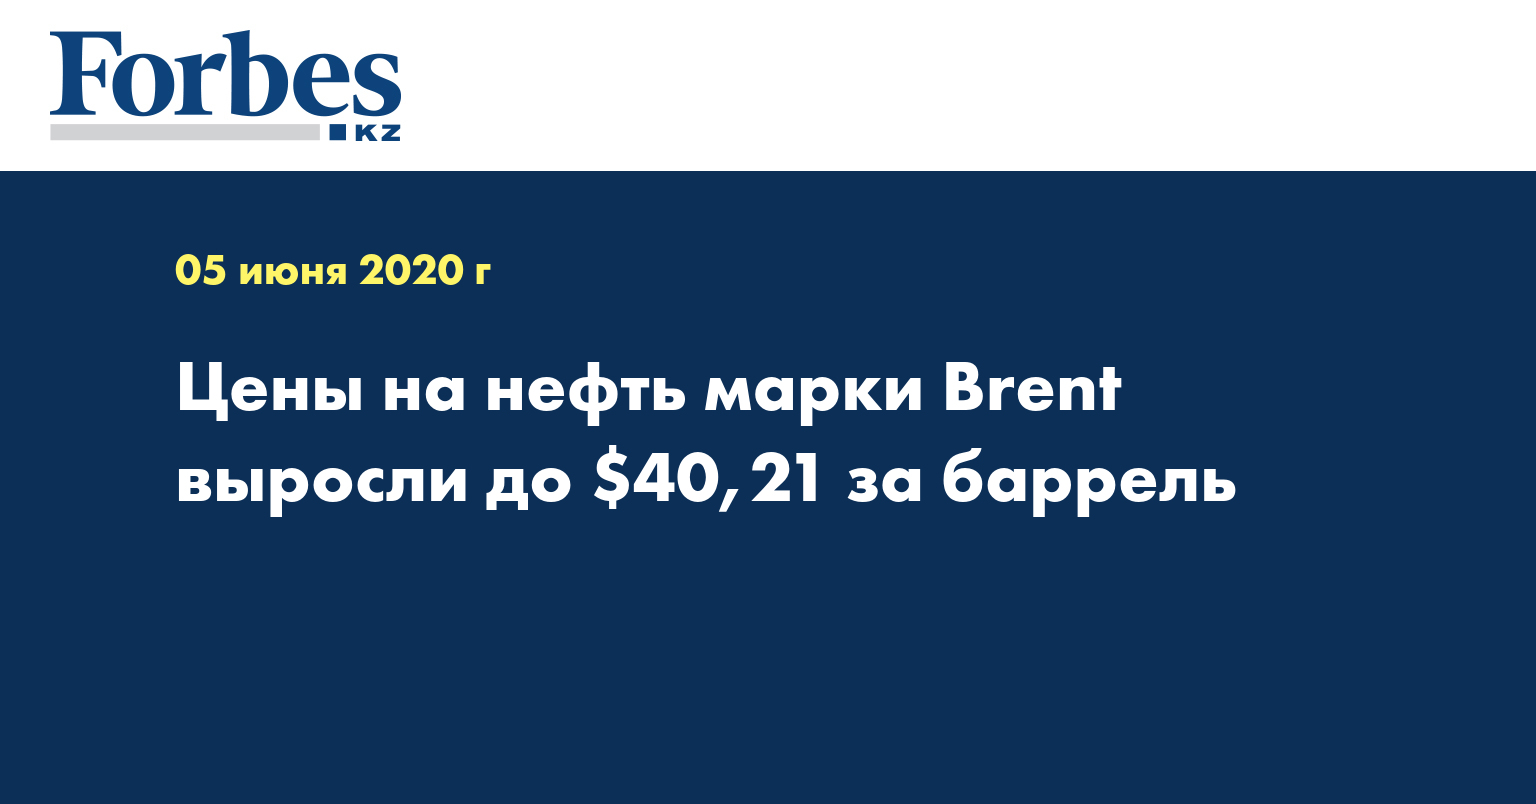 Цены на нефть марки Brent выросли до $40,21 за баррель